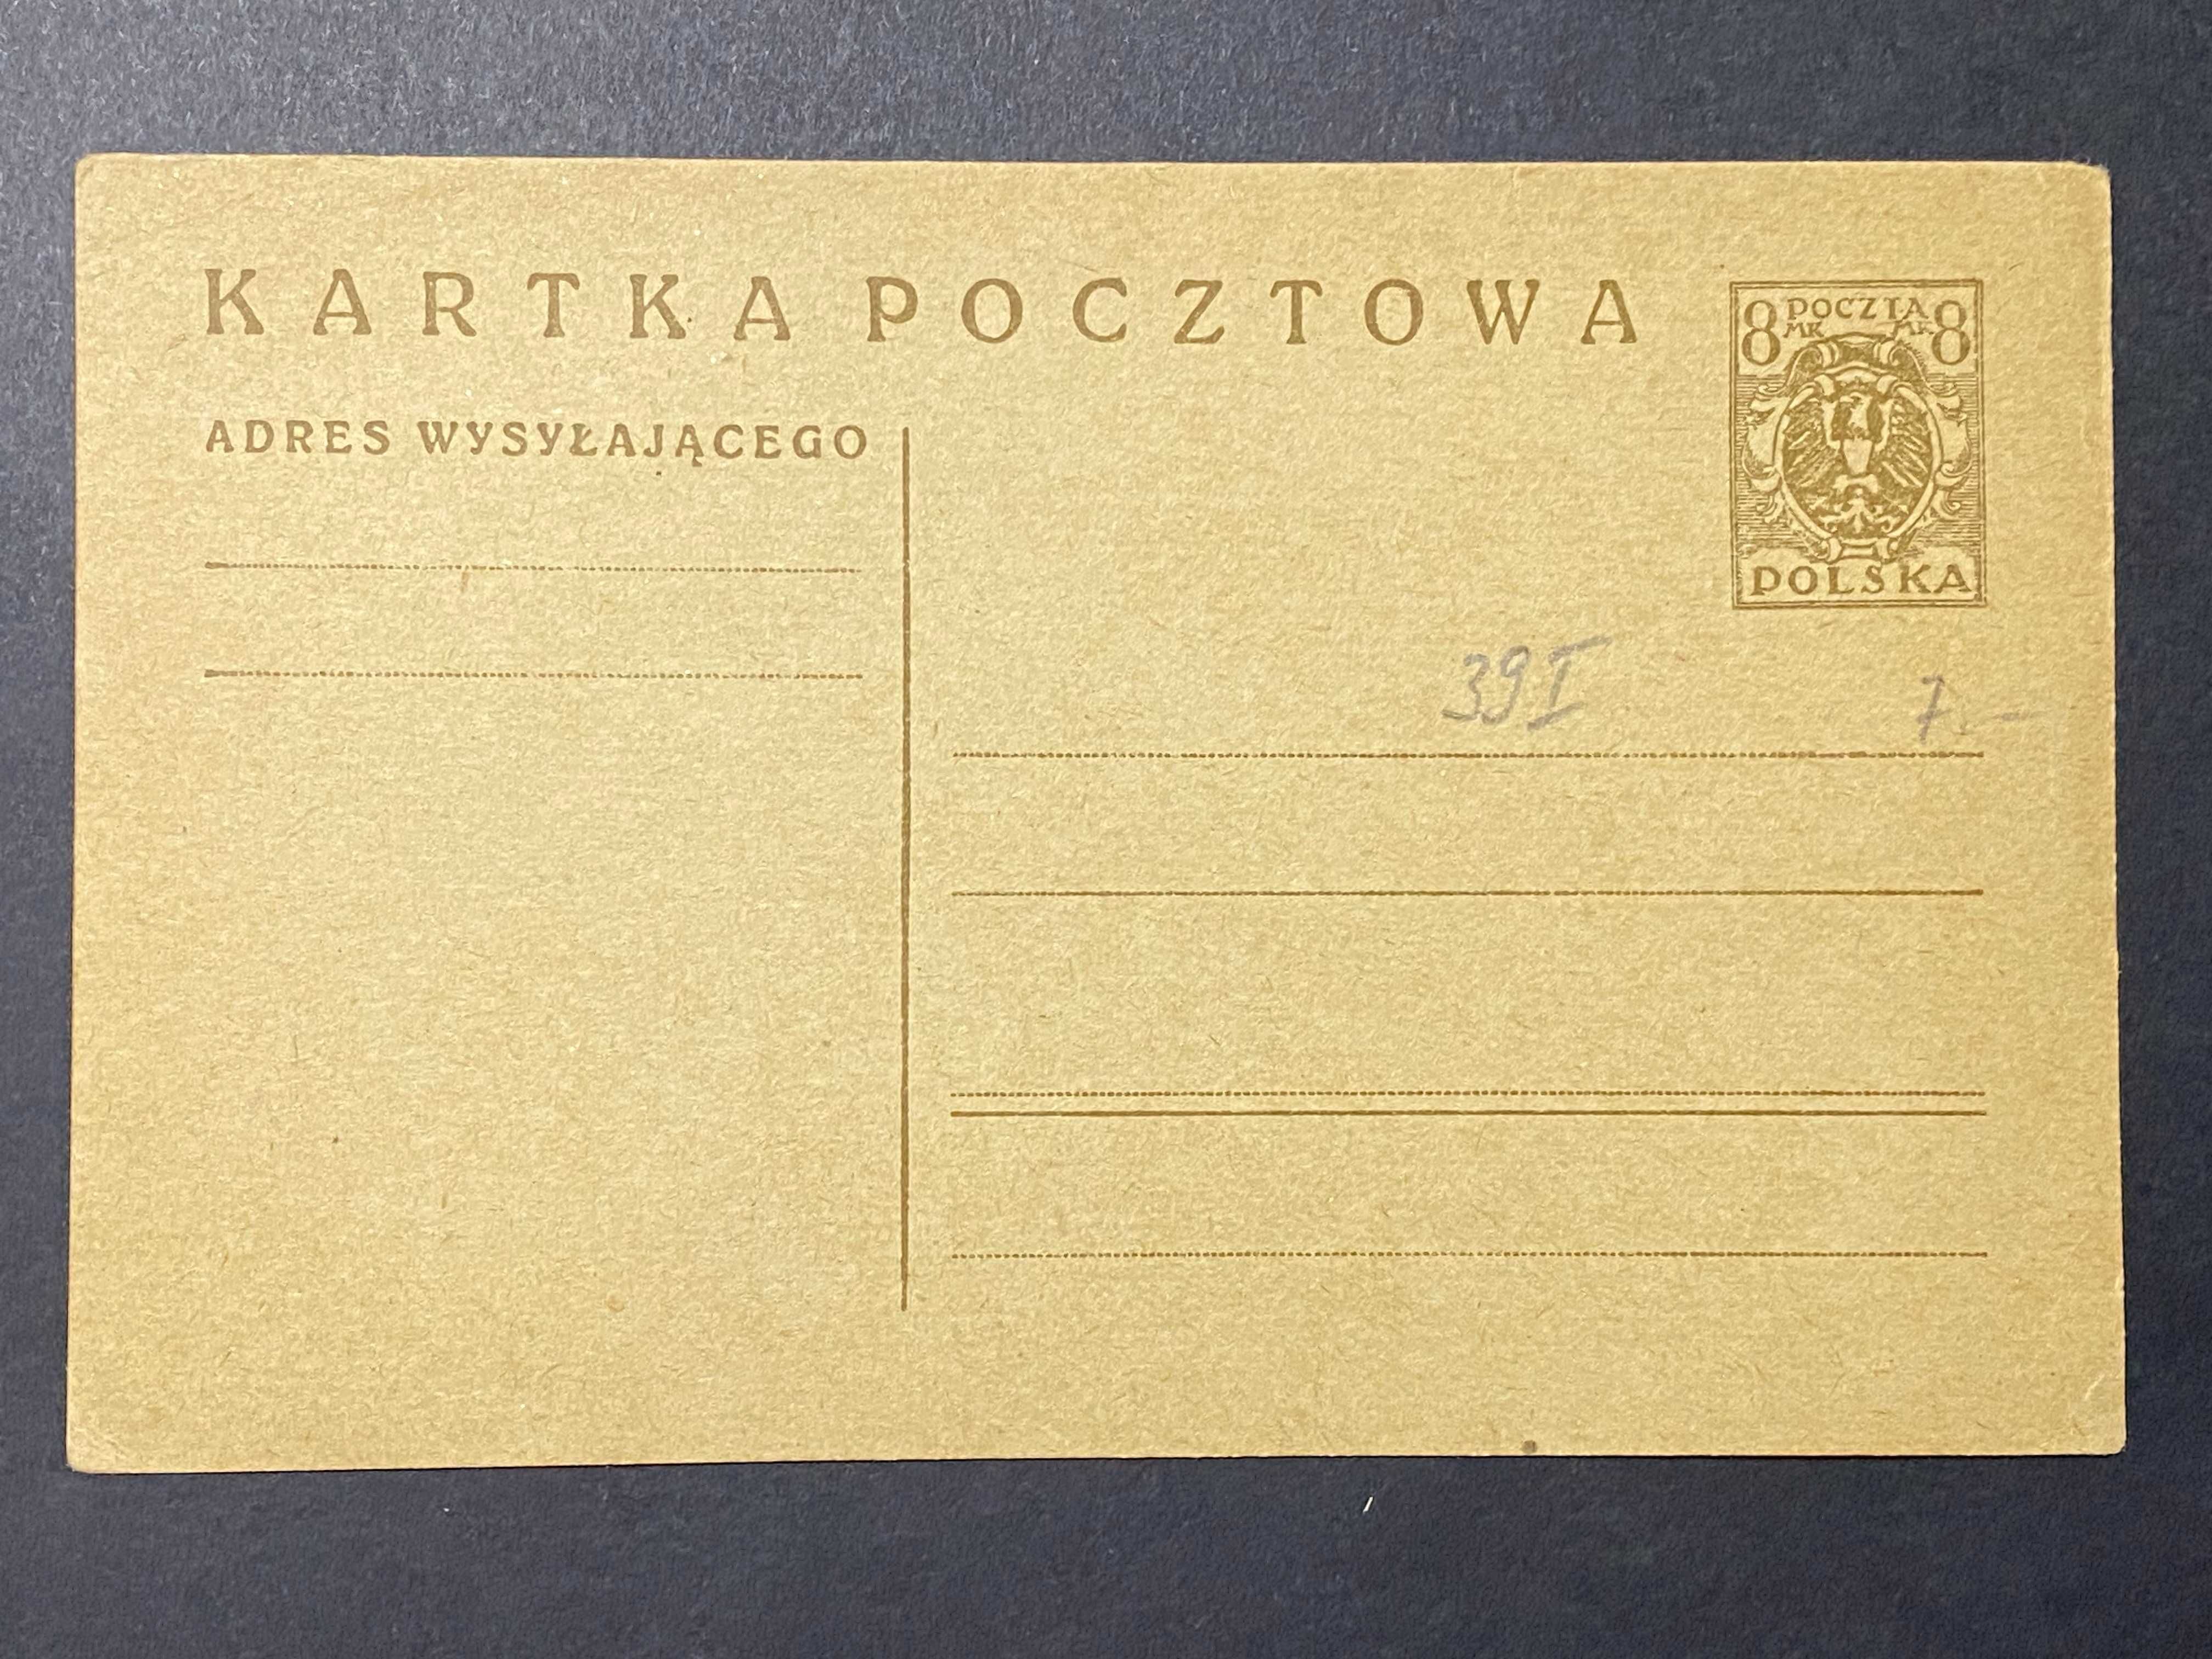 Kartka pocztowa Polska międzywojenna Cp 40